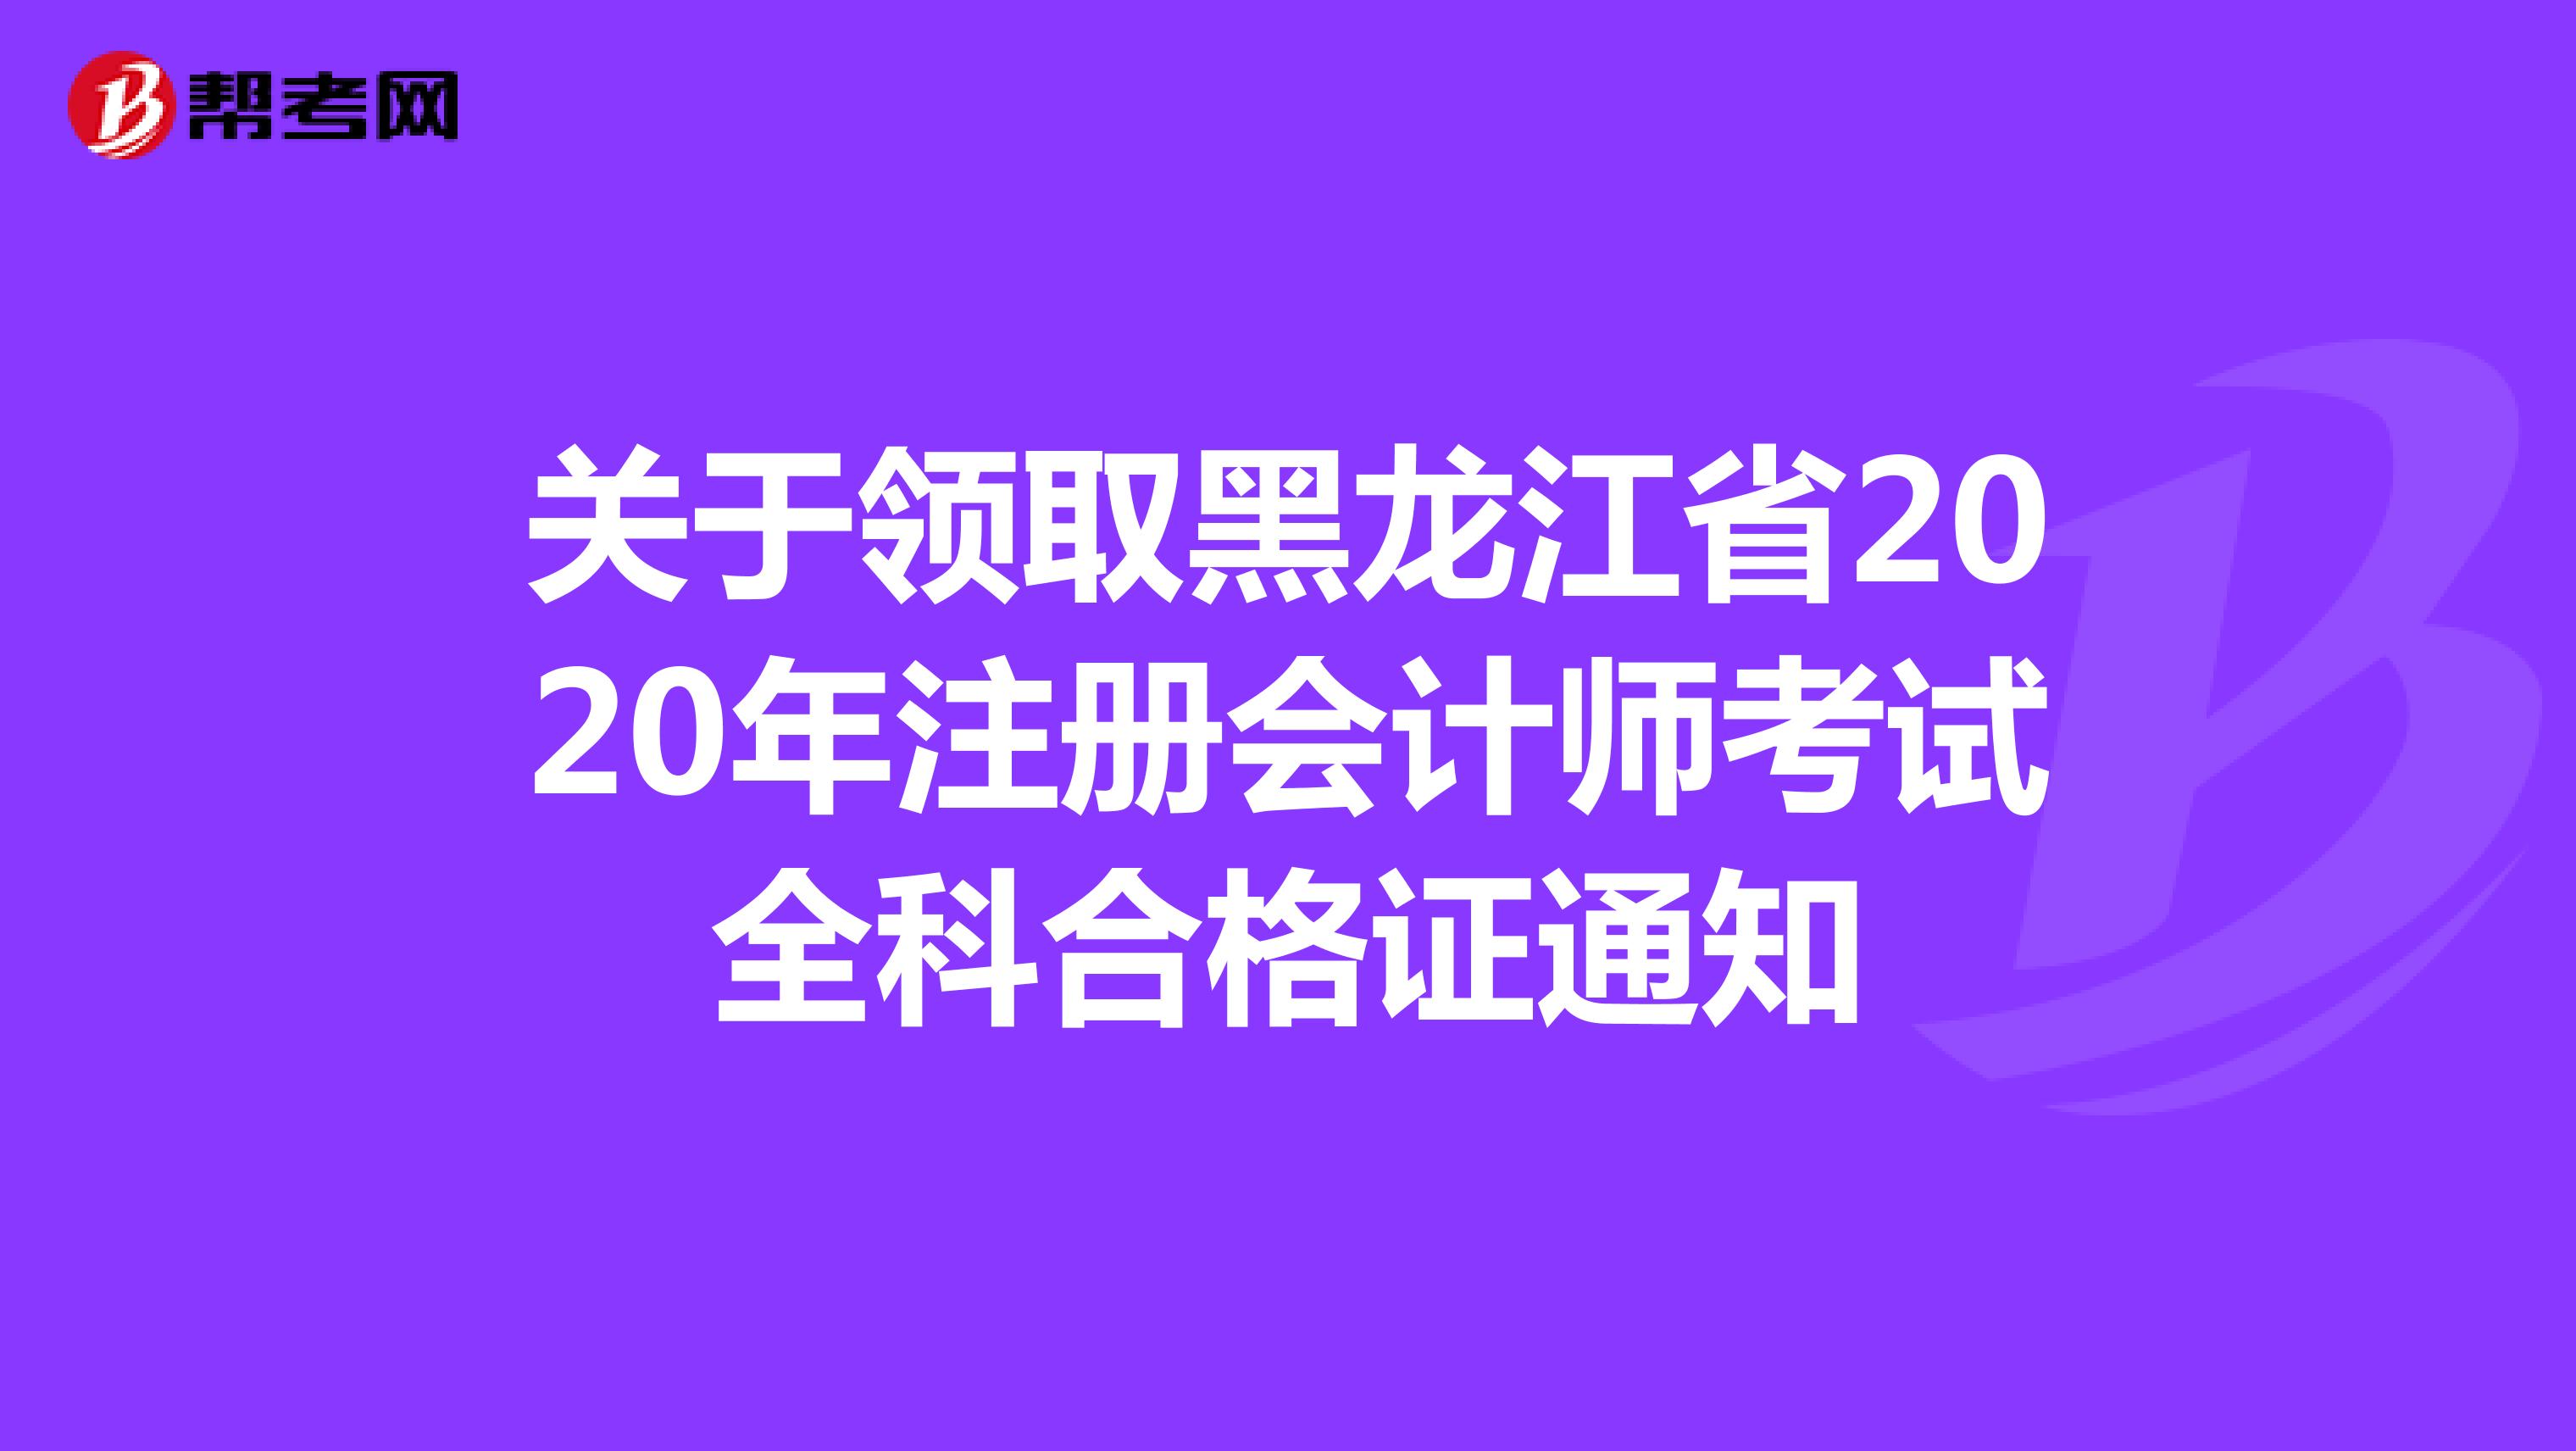 关于领取黑龙江省2020年注册会计师考试全科合格证通知